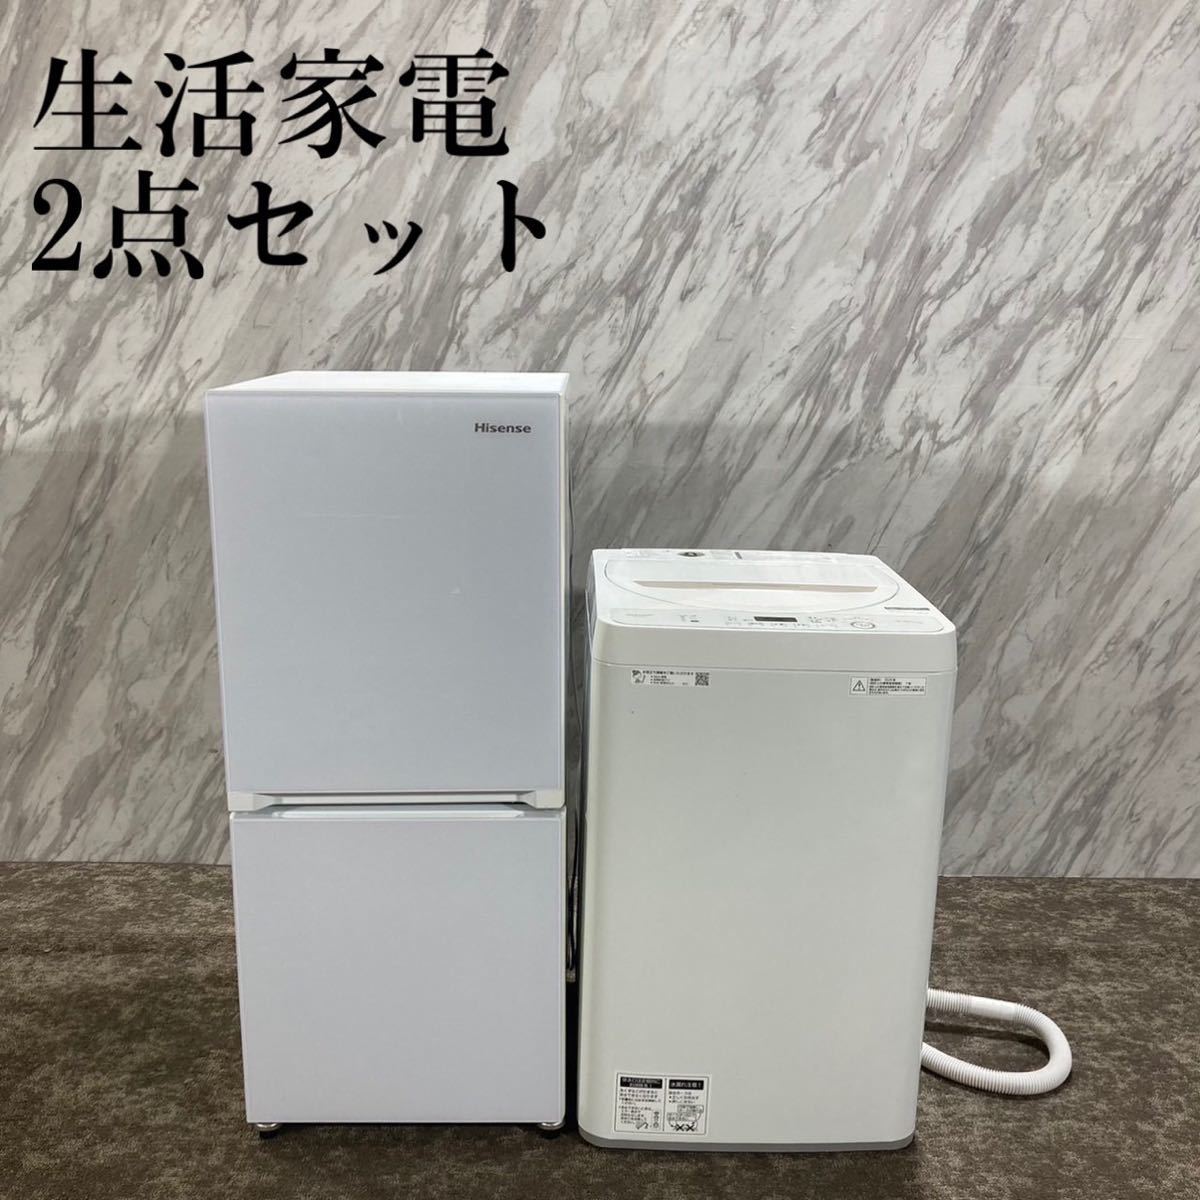 生活家電 2点セット 冷蔵庫 洗濯機 Haier 2019年製 ひとり暮らし 家電